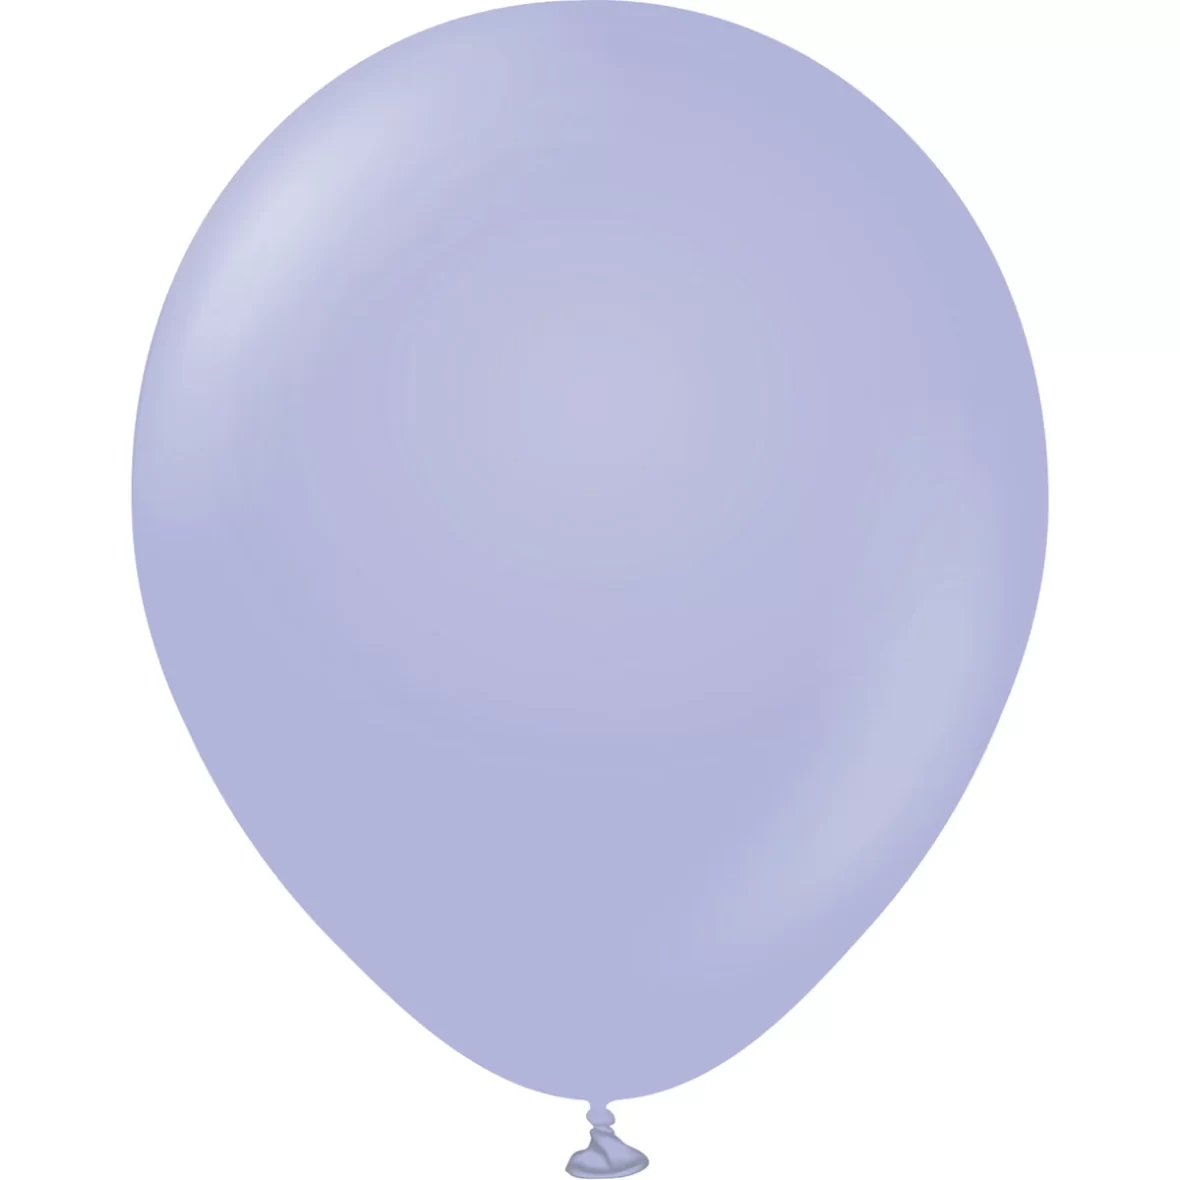 979-baloane-jumbo-ovale-45-cm-2